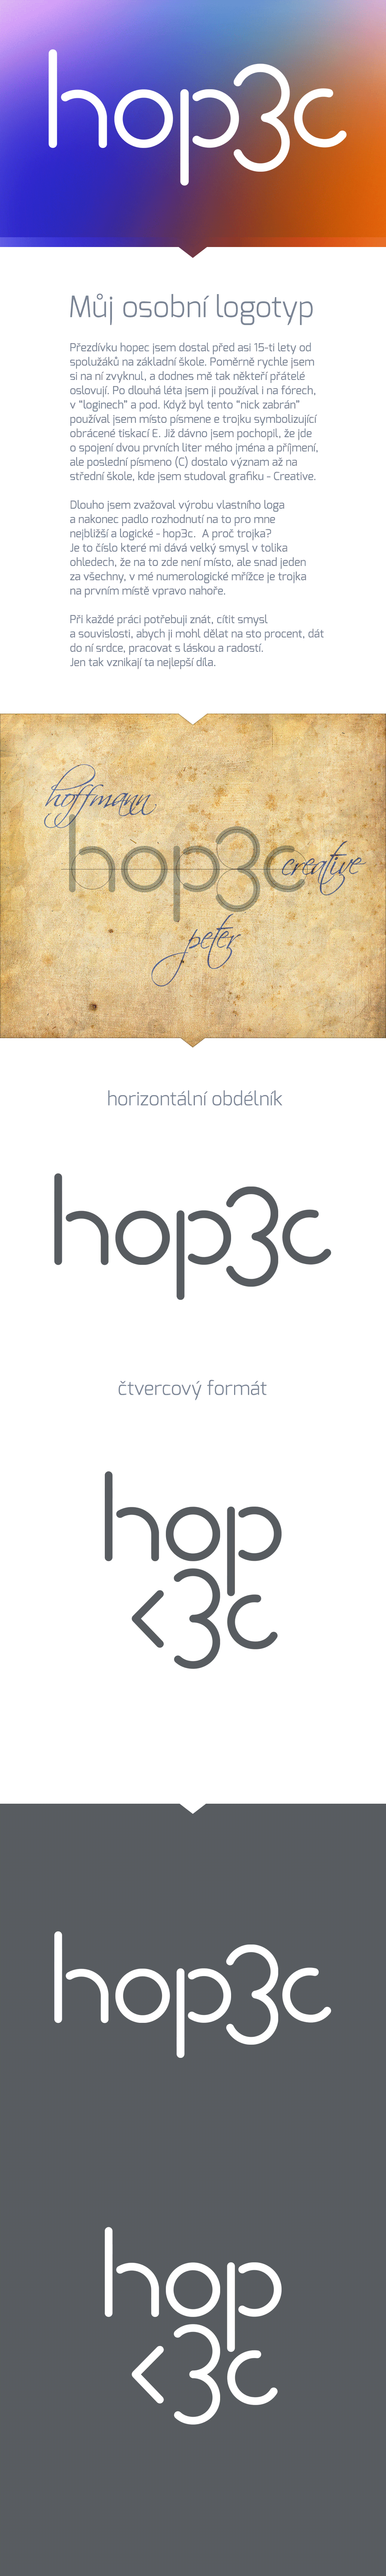 logo hopec hop3c